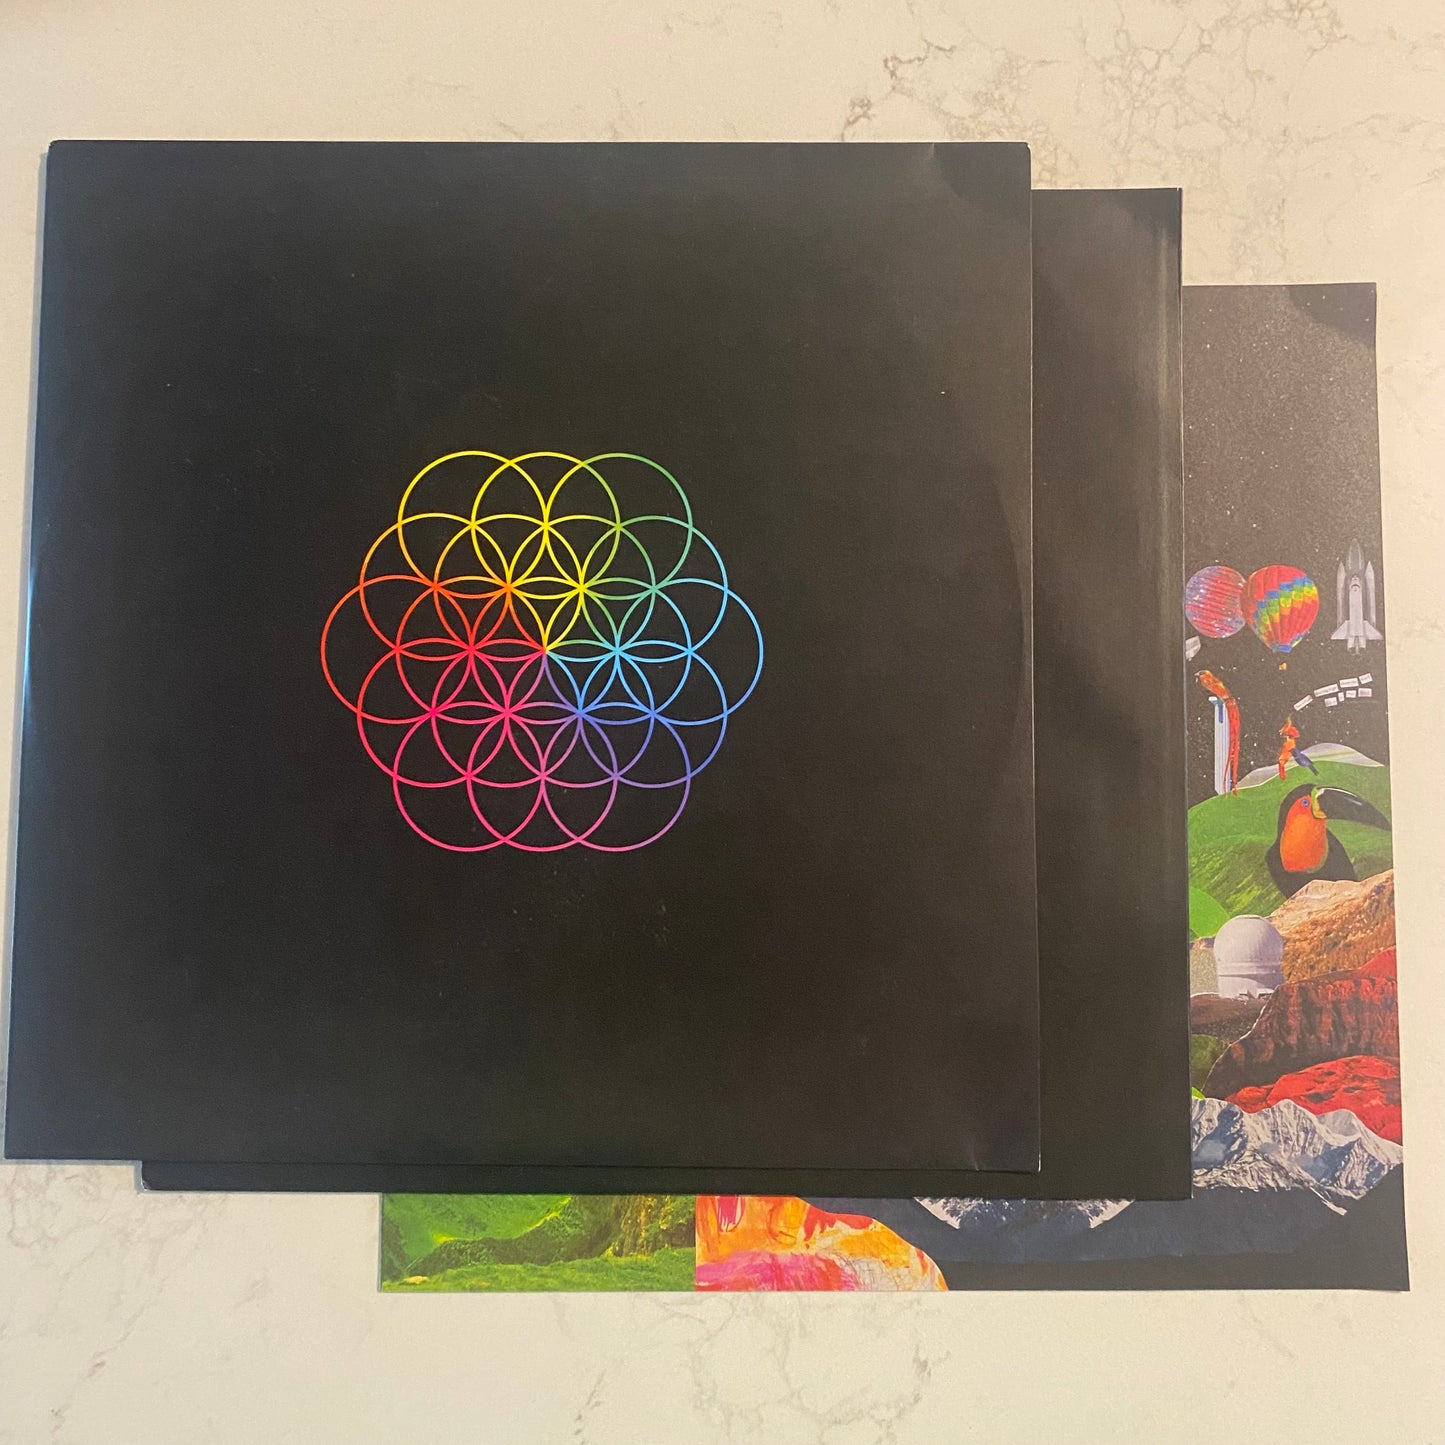 Coldplay - A Head Full Of Dreams (LP, Pin + LP, Blu + Album, Ltd) (L)